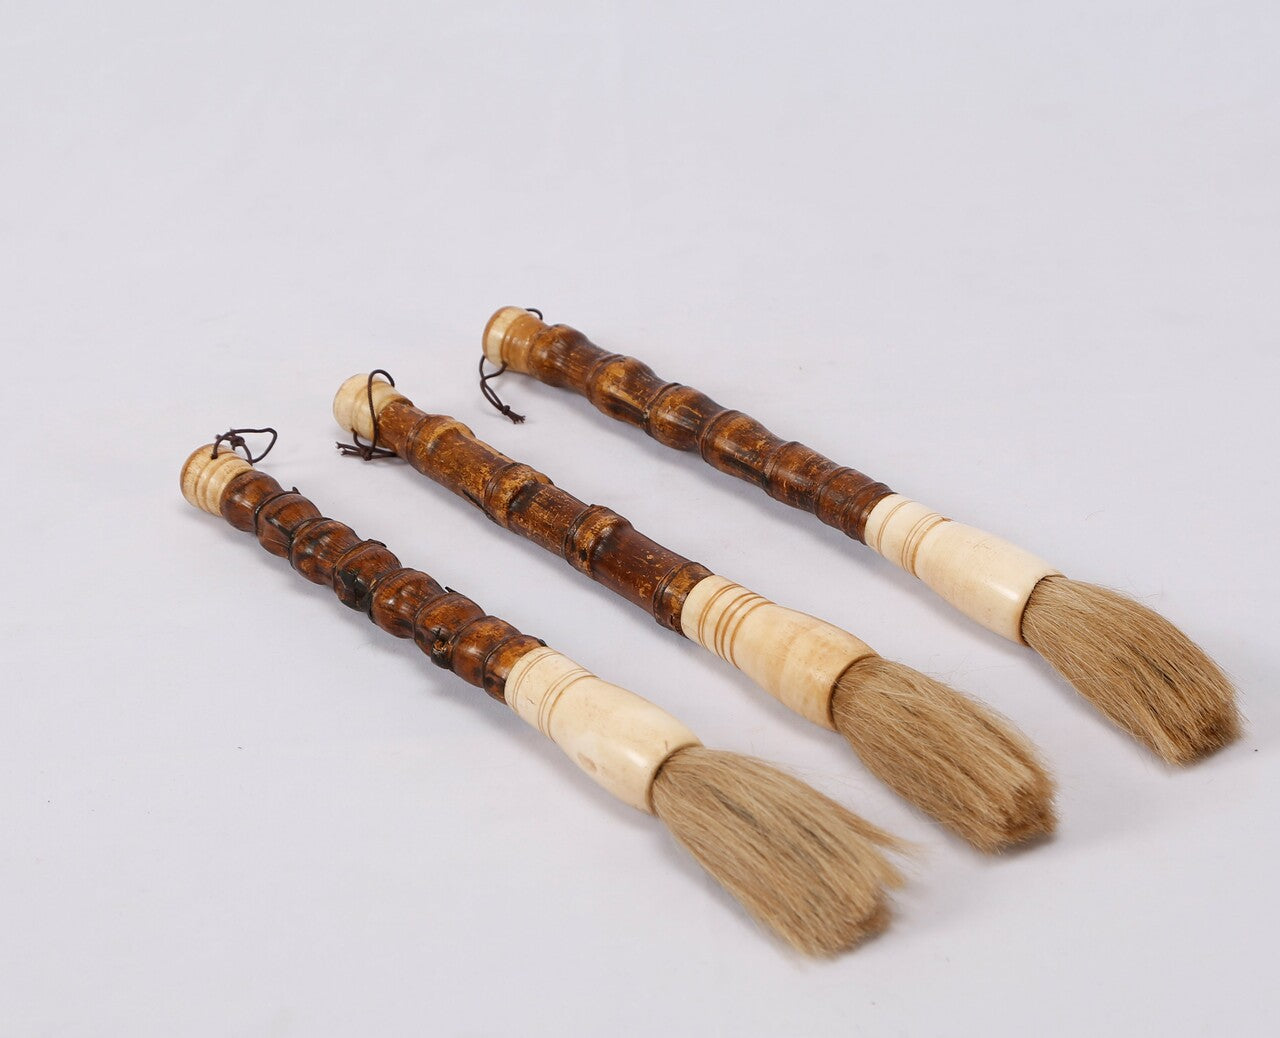 Arhat Bamboo Calligraphy Brush.